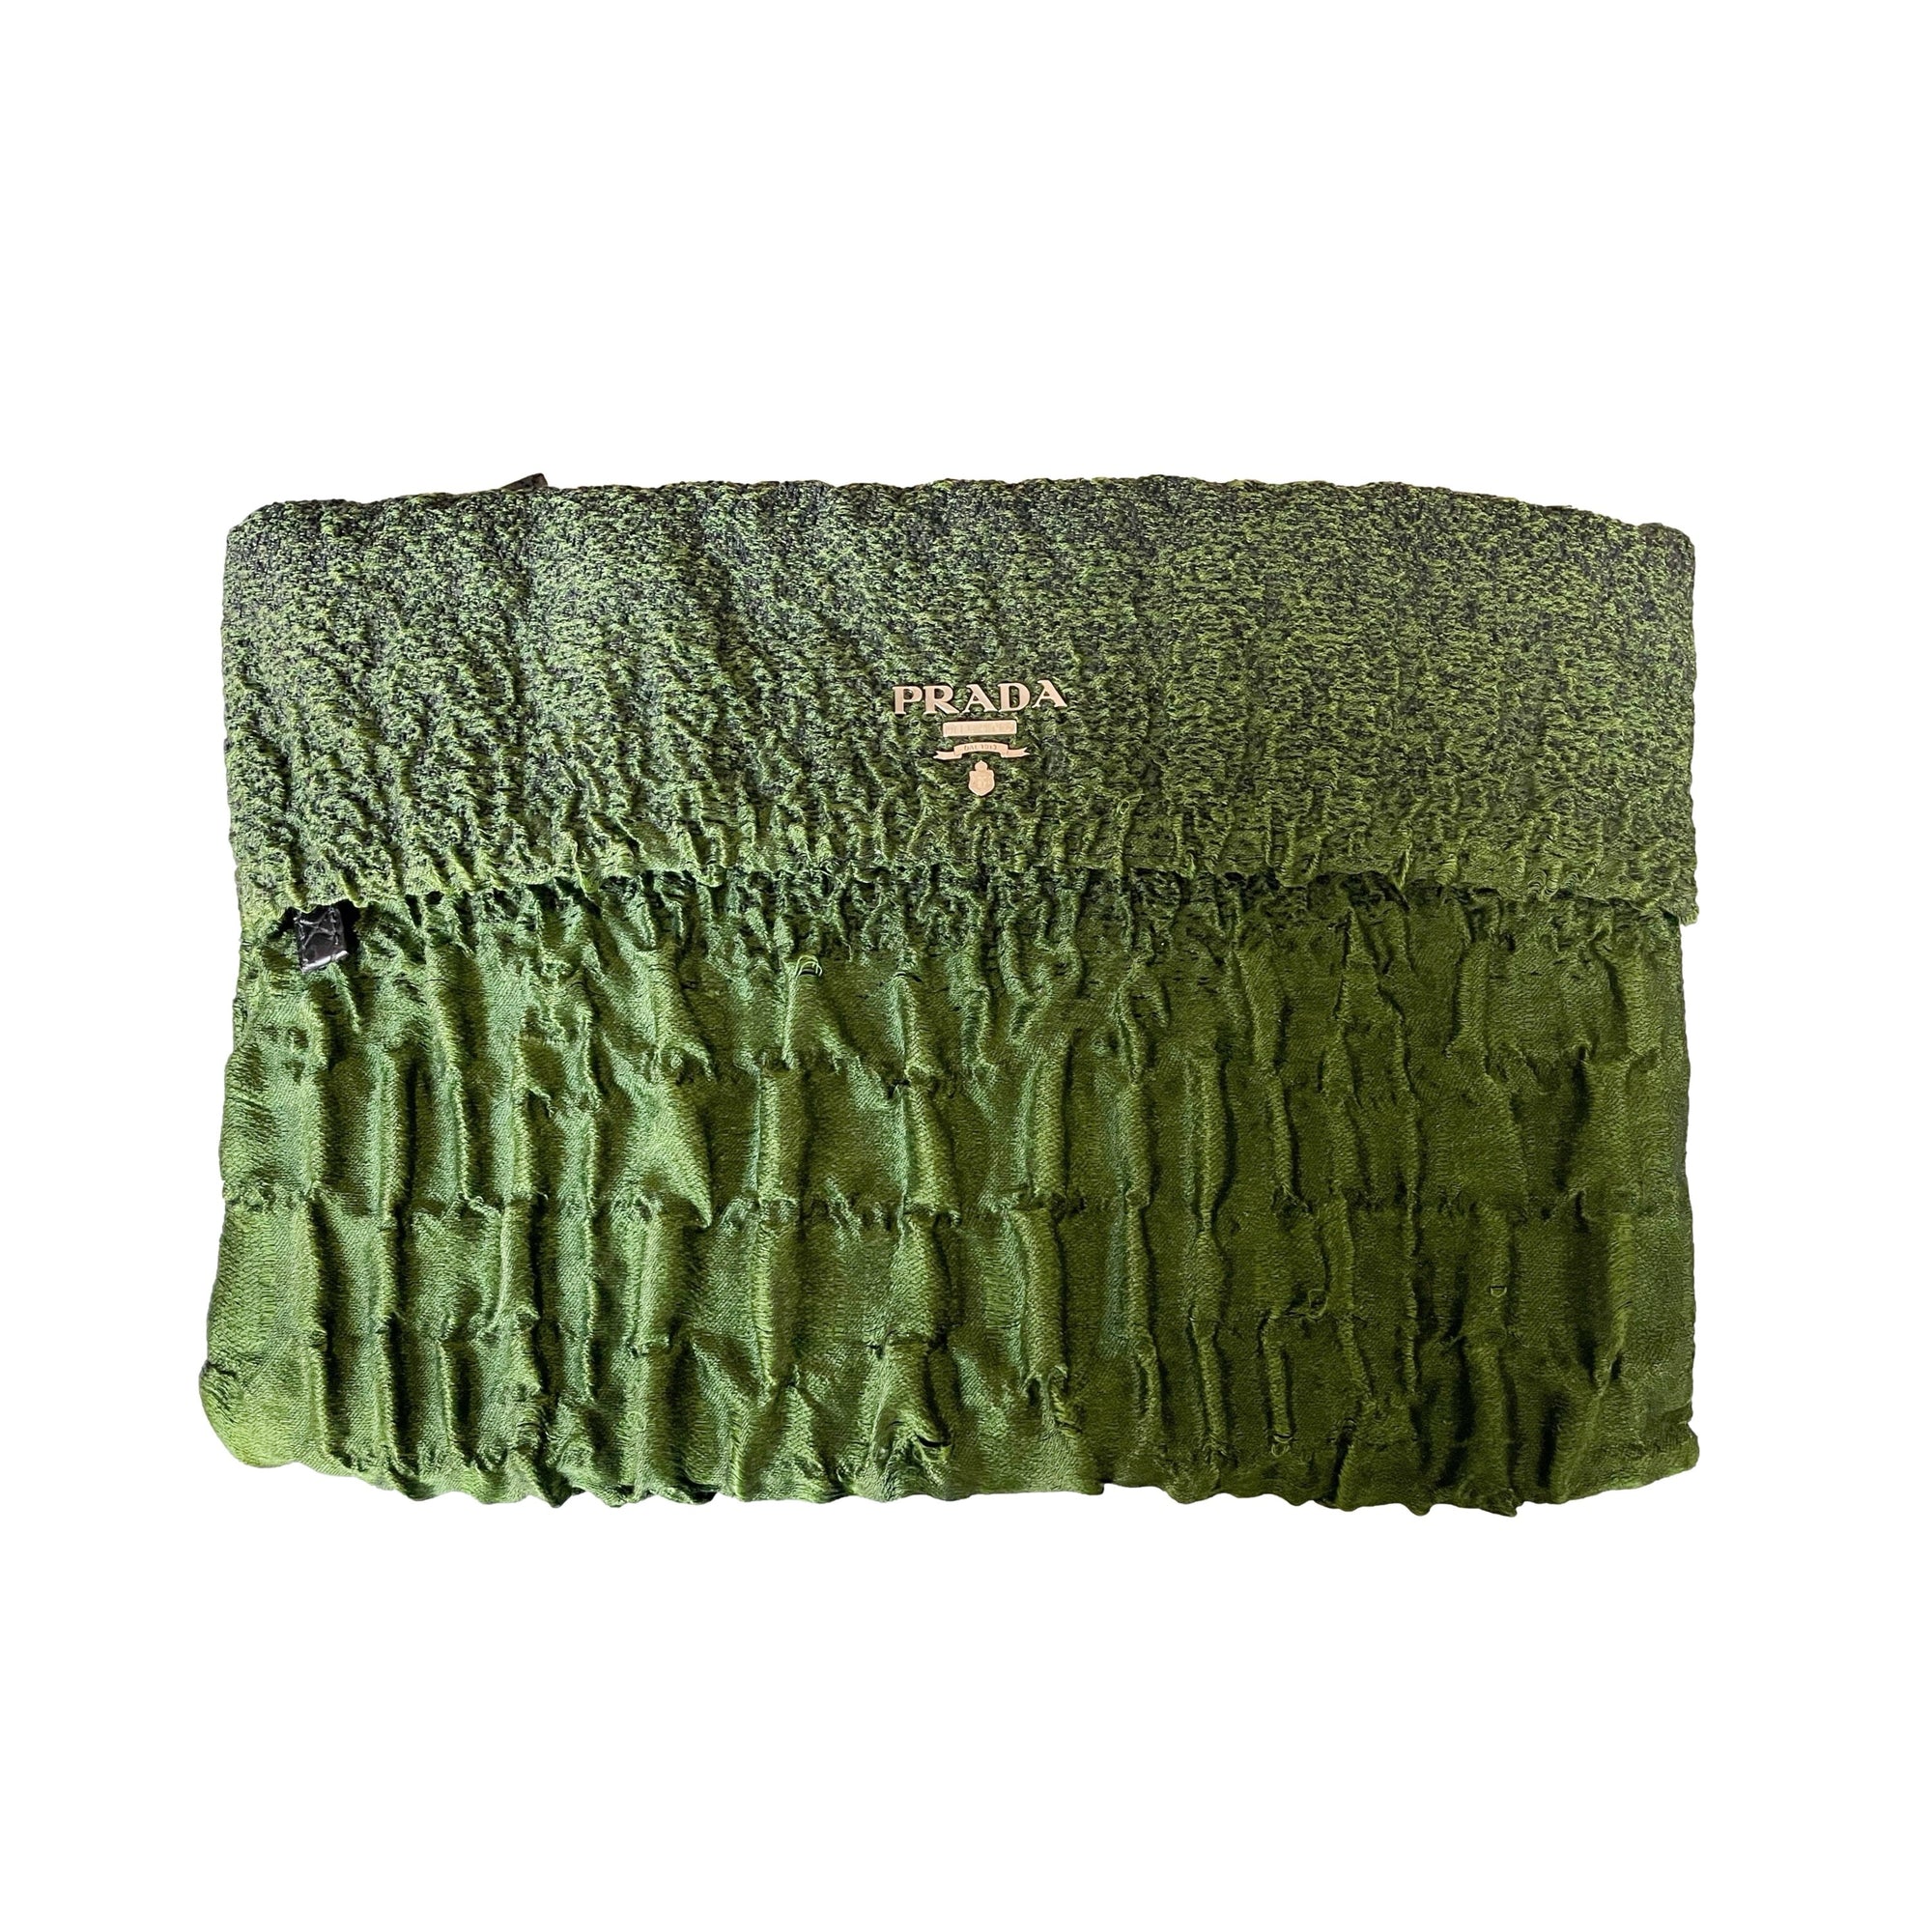 Prada Green Textured Jumbo Clutch - Handbags